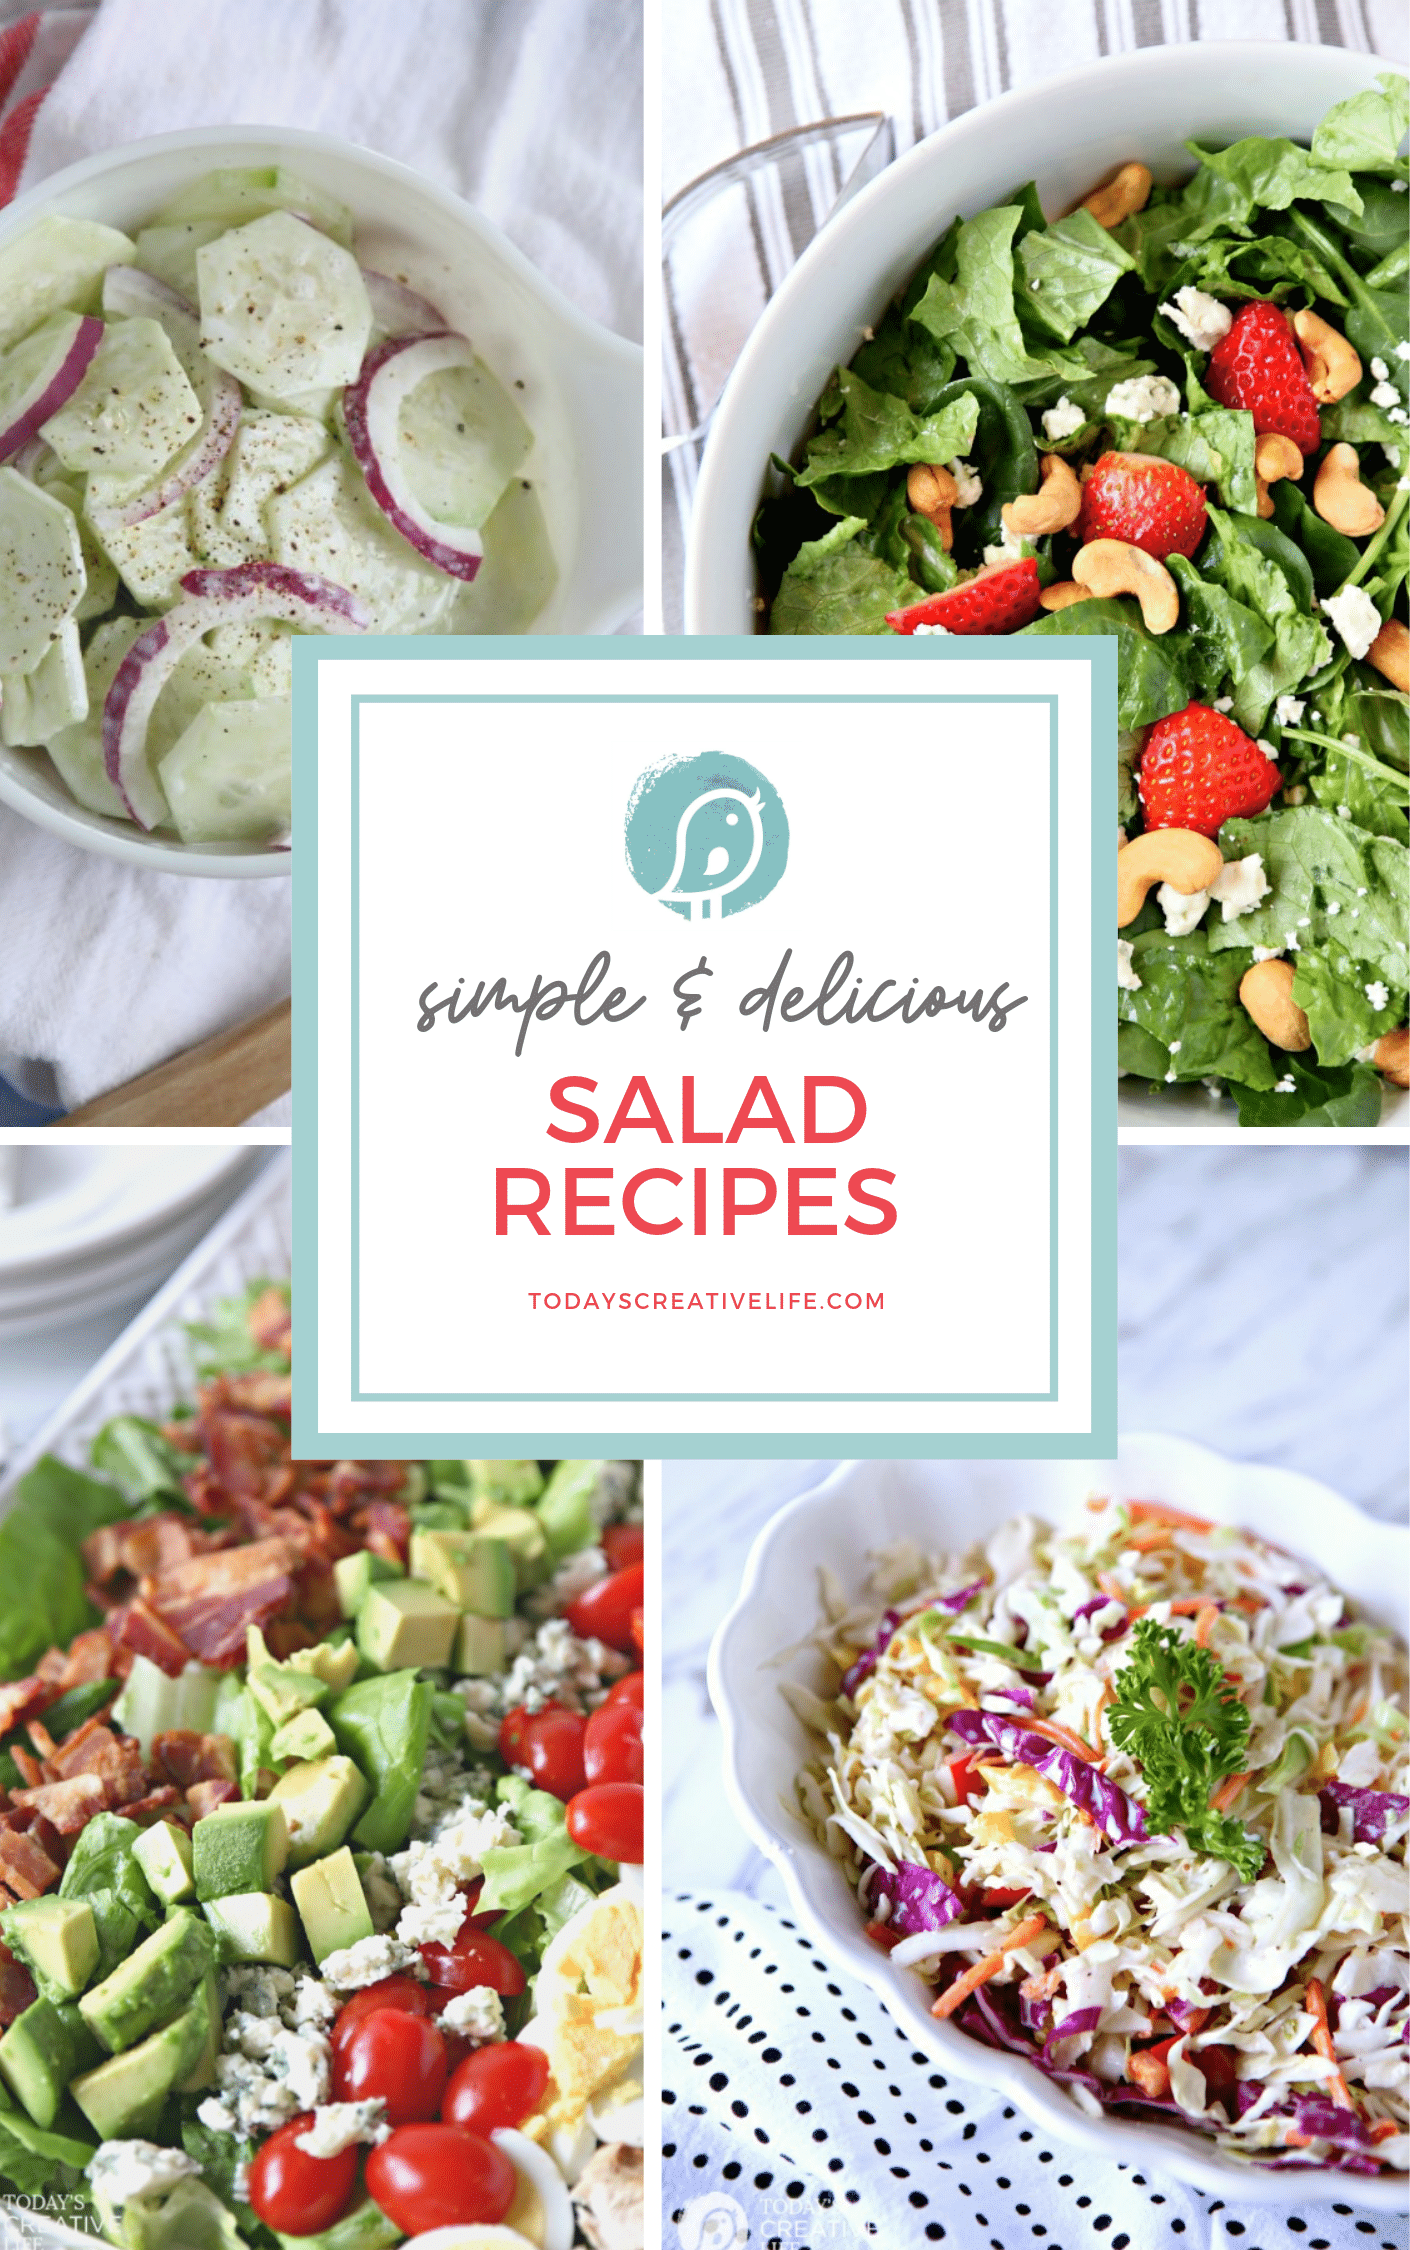 16 Simple & Delicious Salad Recipes